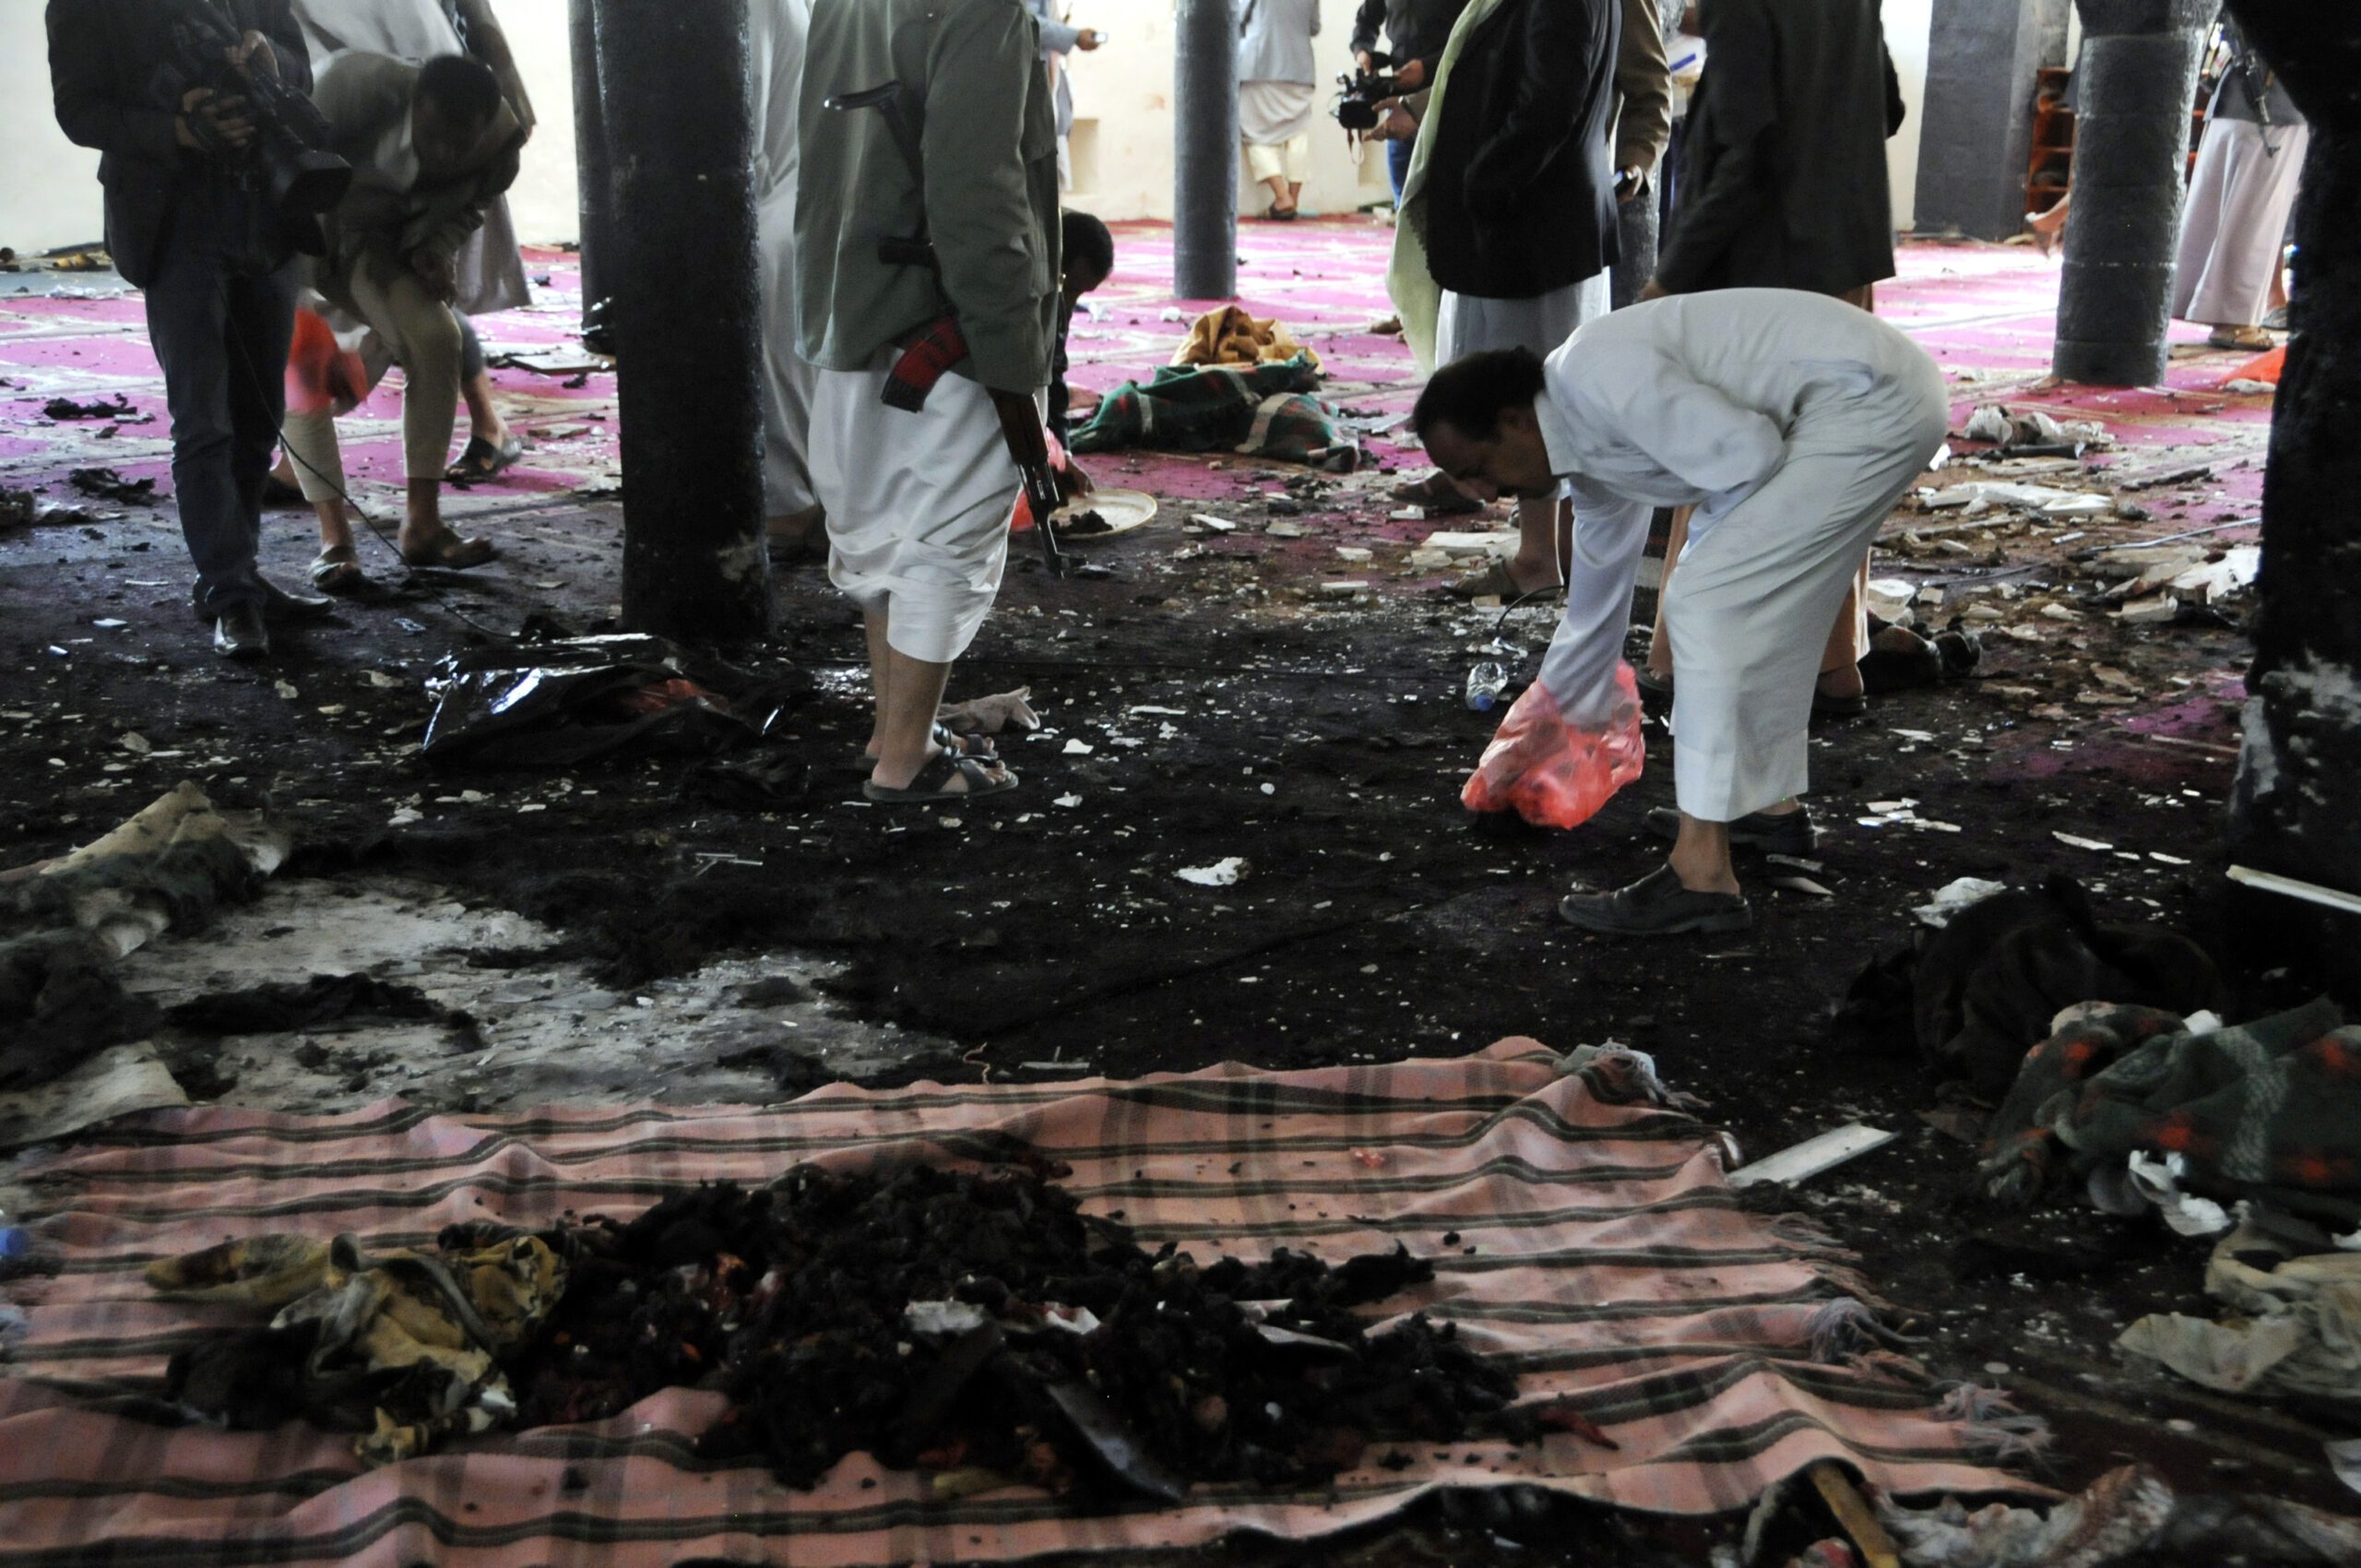 142 dead in Yemen mosque bombings claimed by ISIS